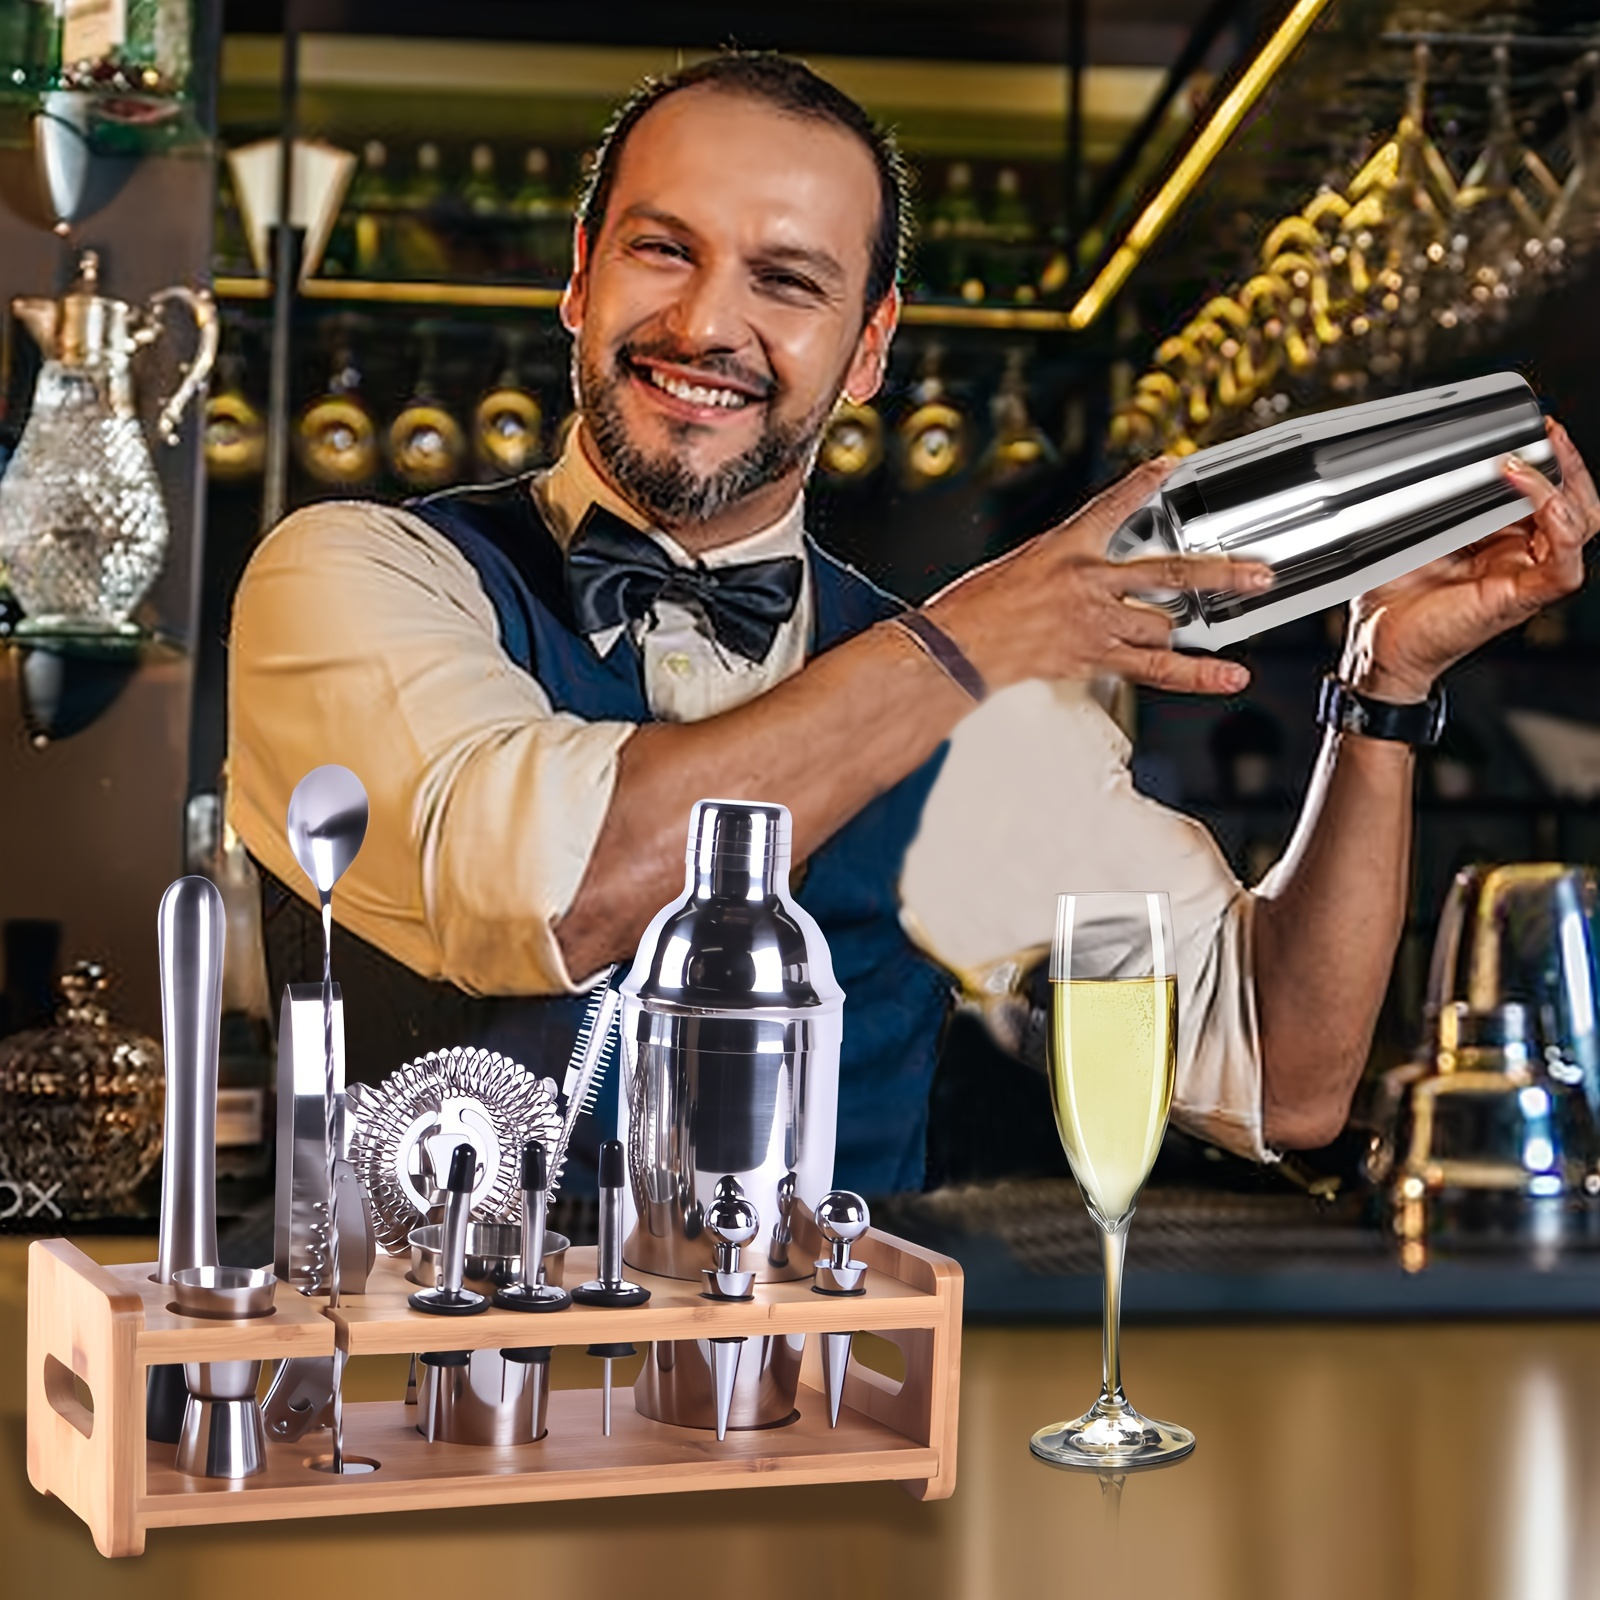 Comment utiliser un kit barman pour cocktails 